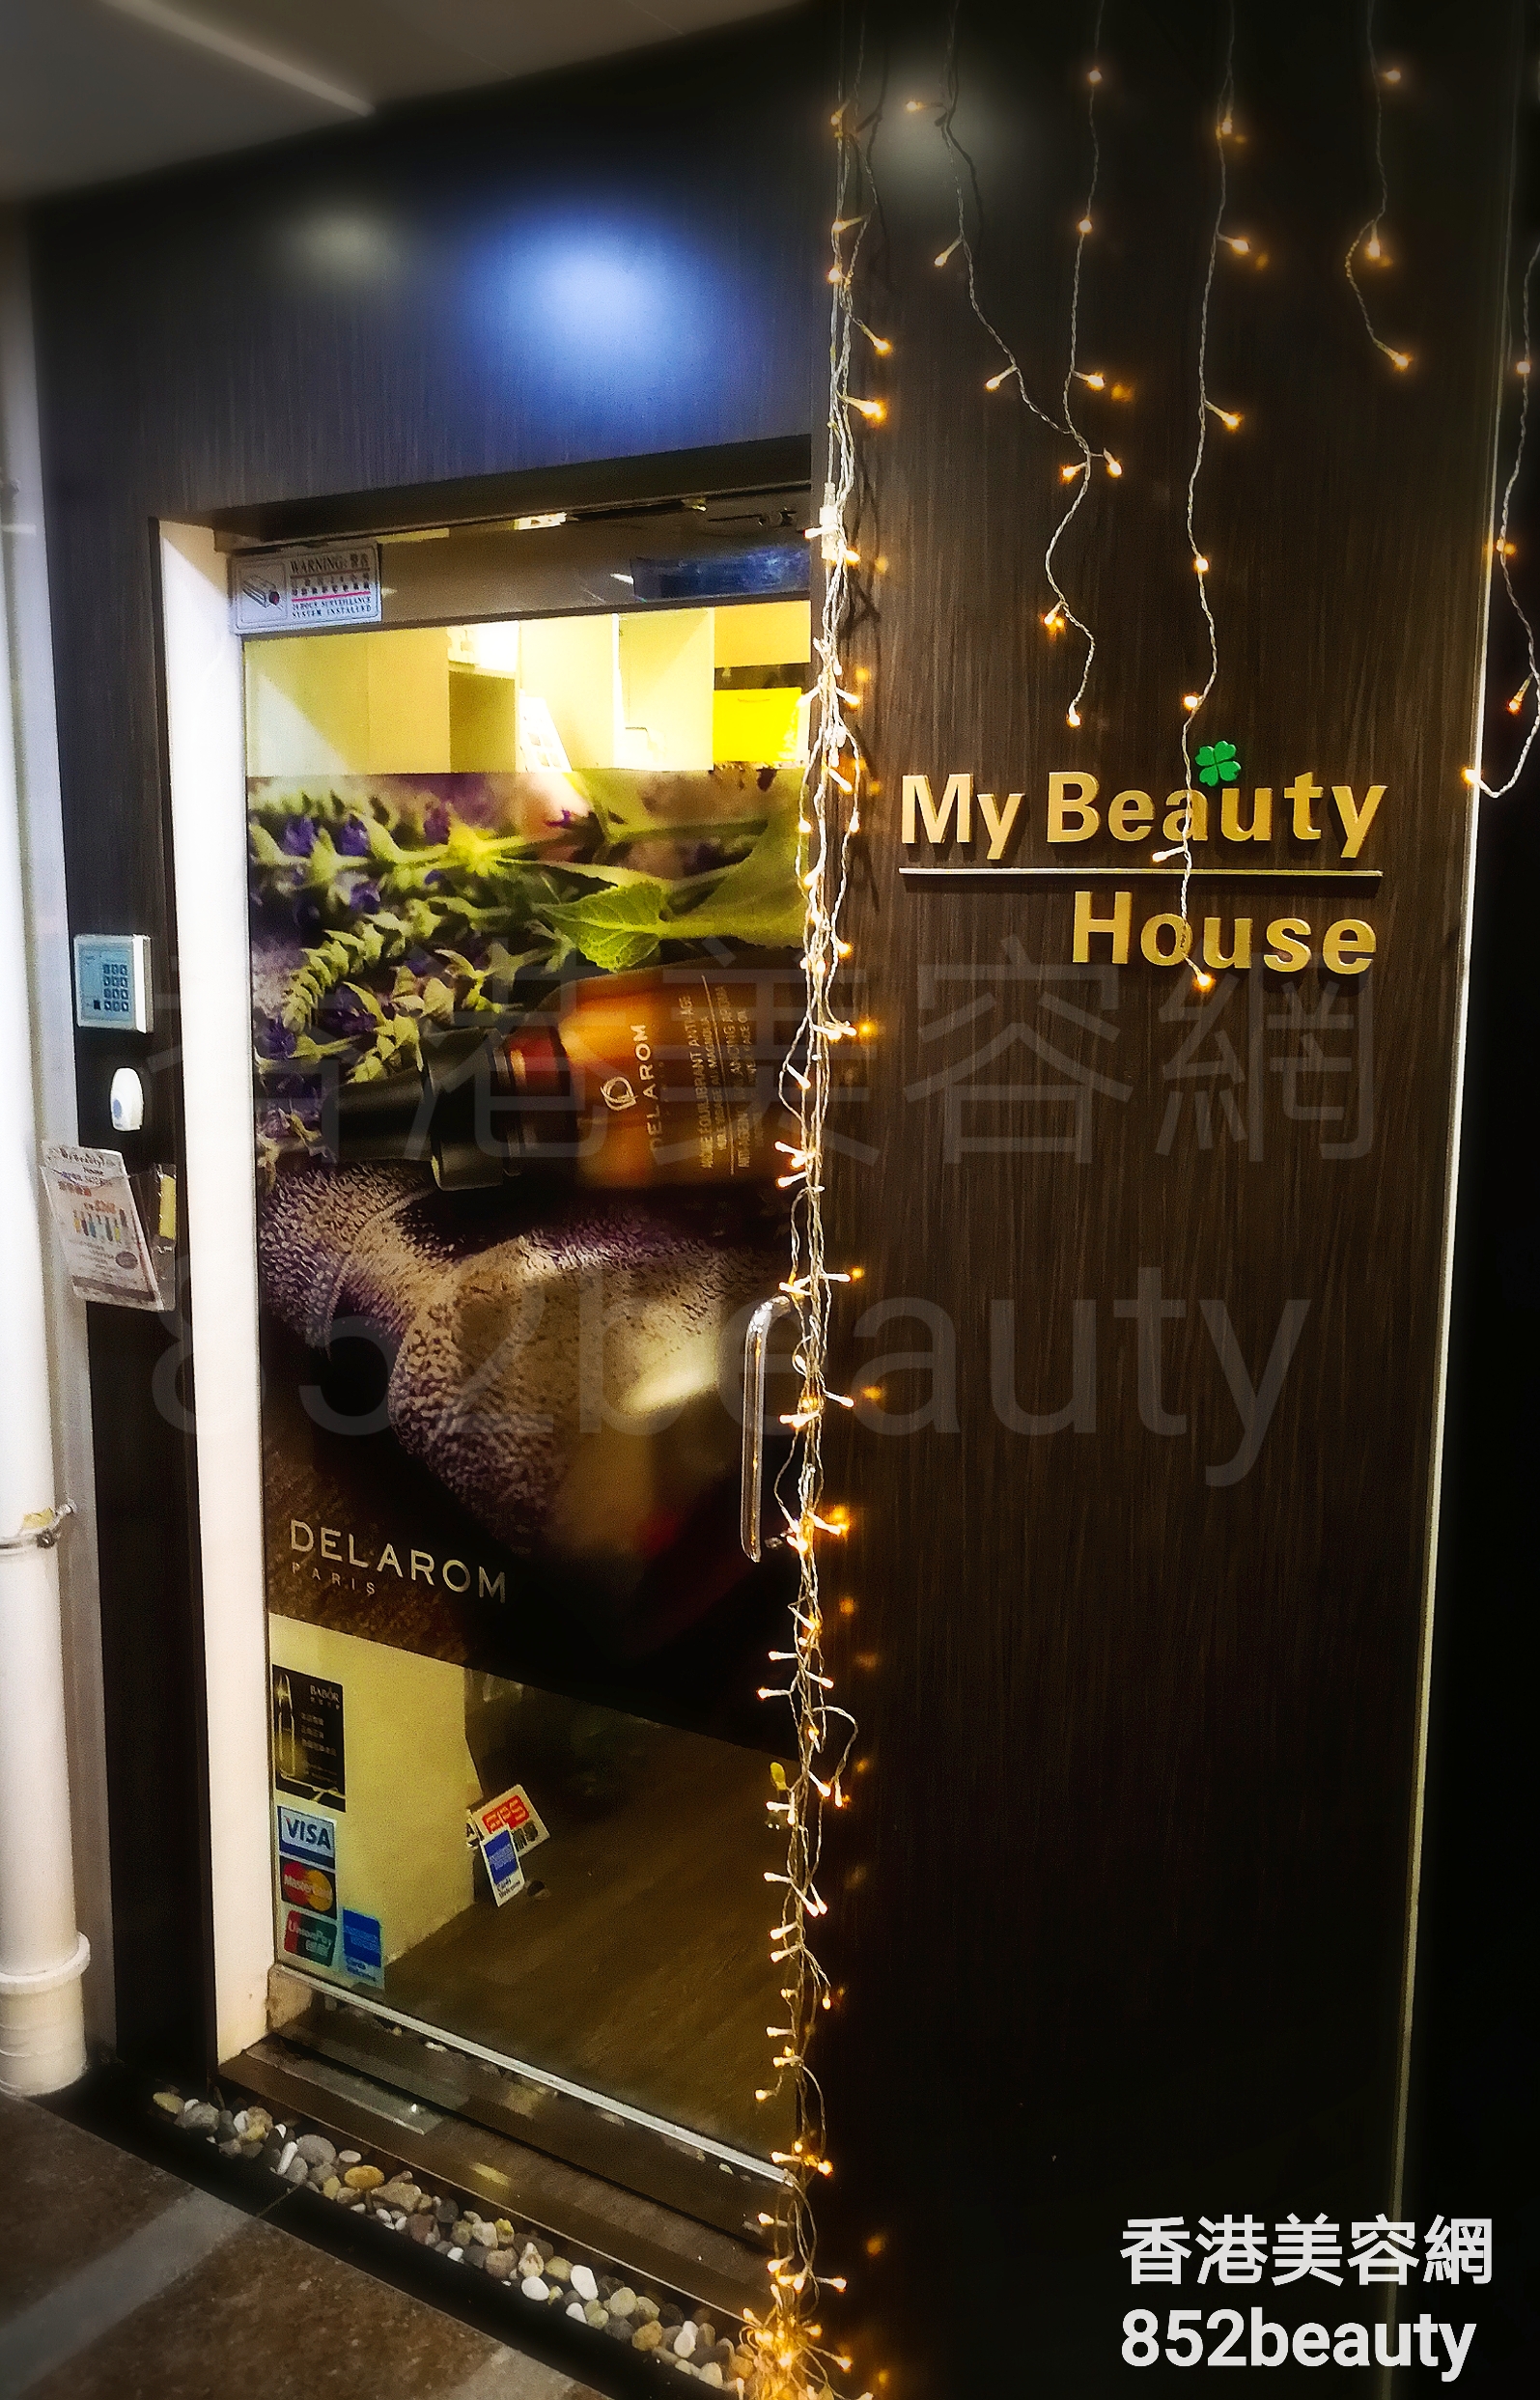 美容院: My Beauty House